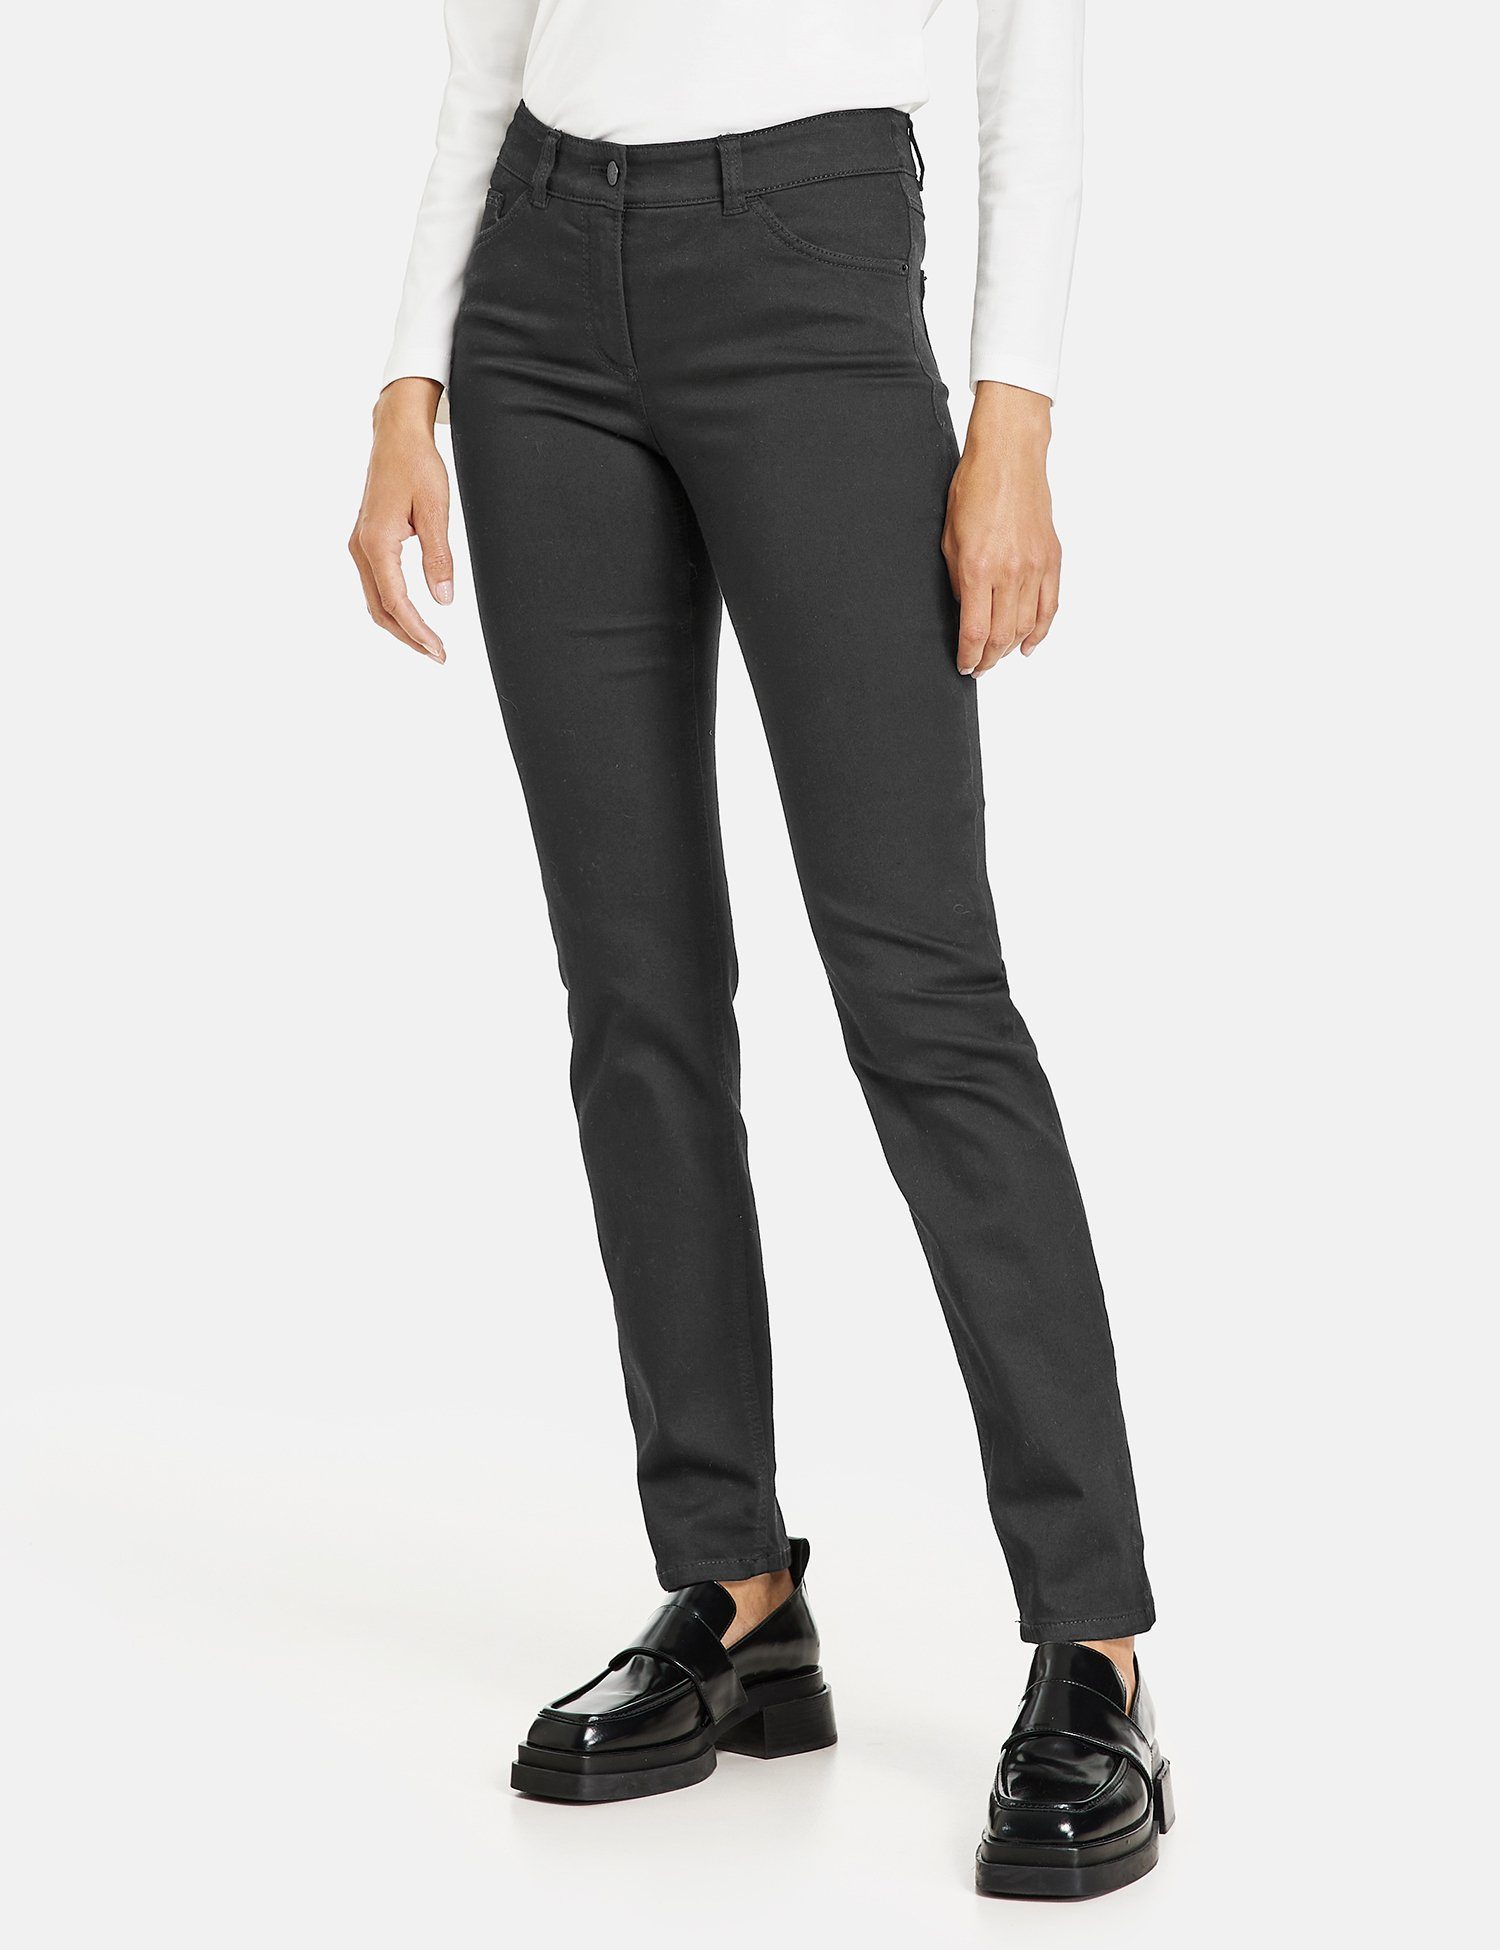 GERRY Slimfit Black Best4me Black Jeans WEBER Stretch-Jeans 5-Pocket Denim